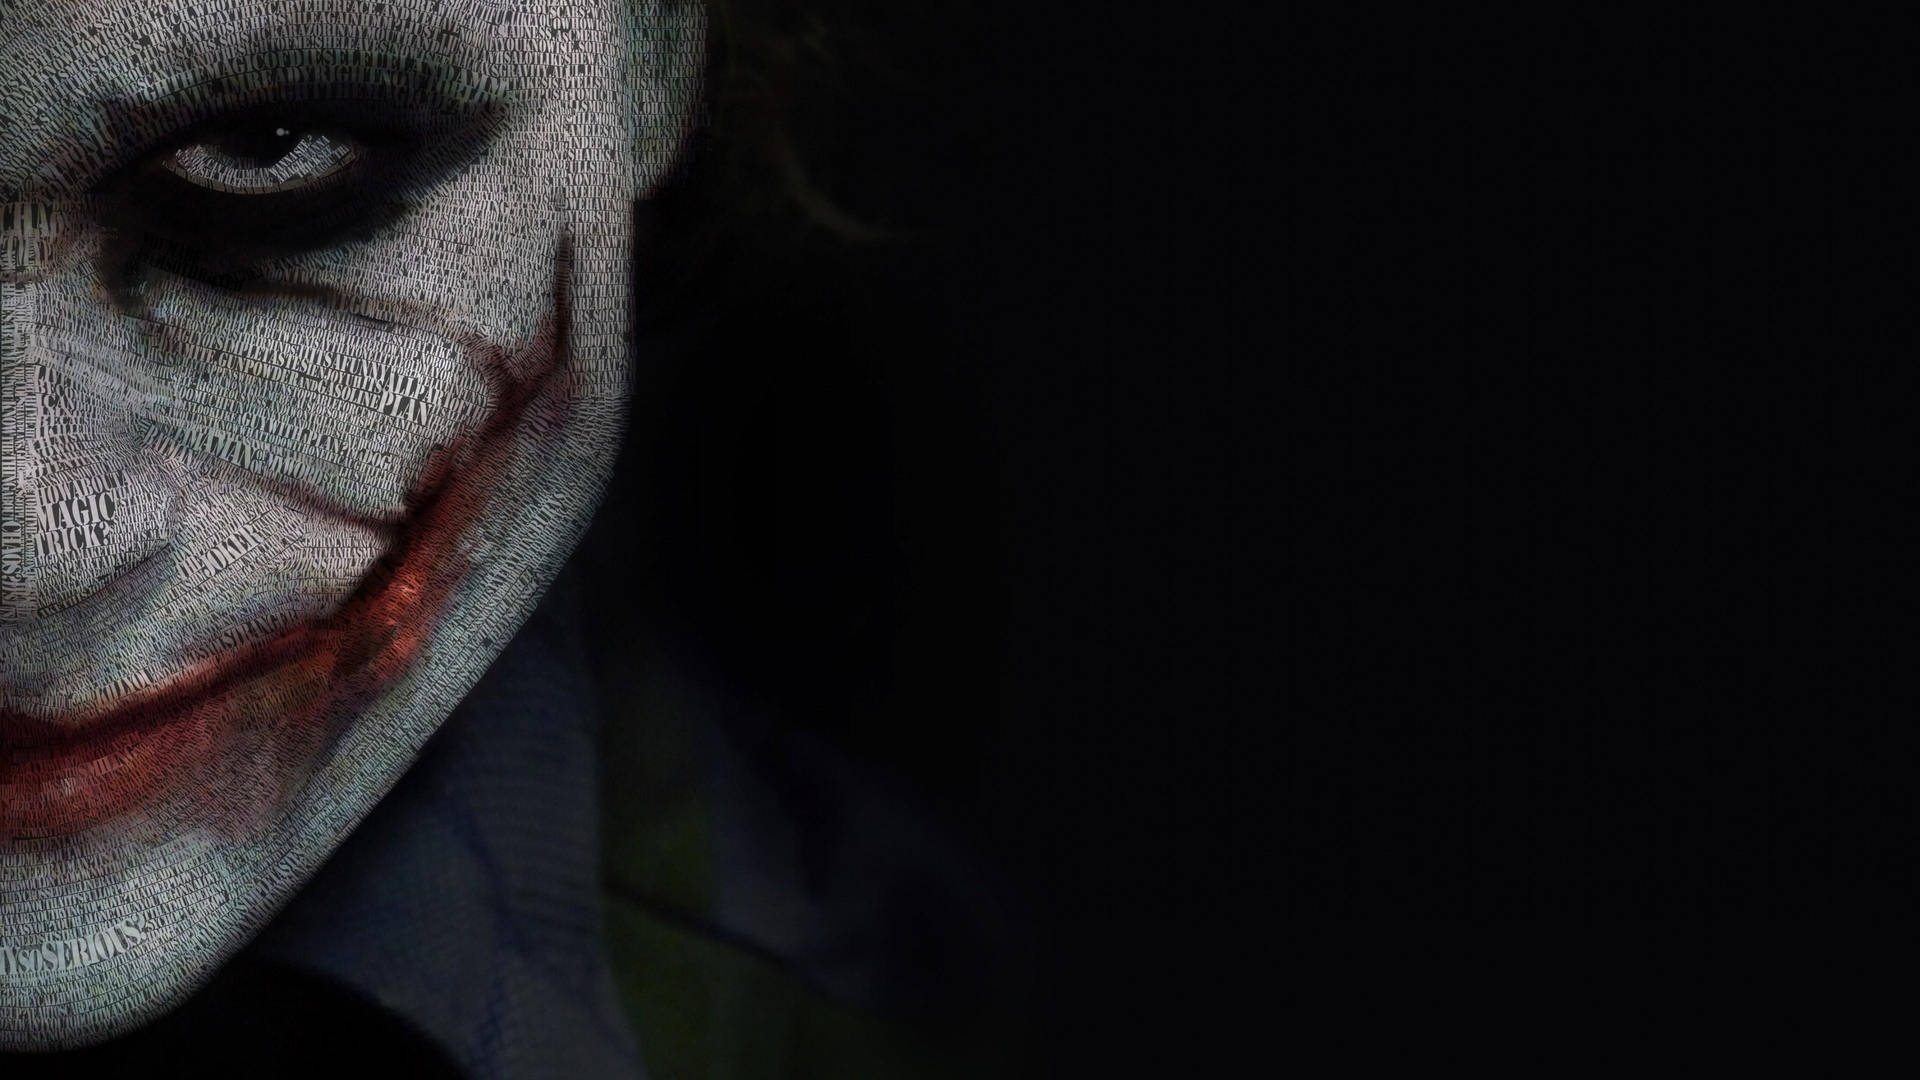 Joker Quote Text Art 4k Ultra Hd Wallpaper